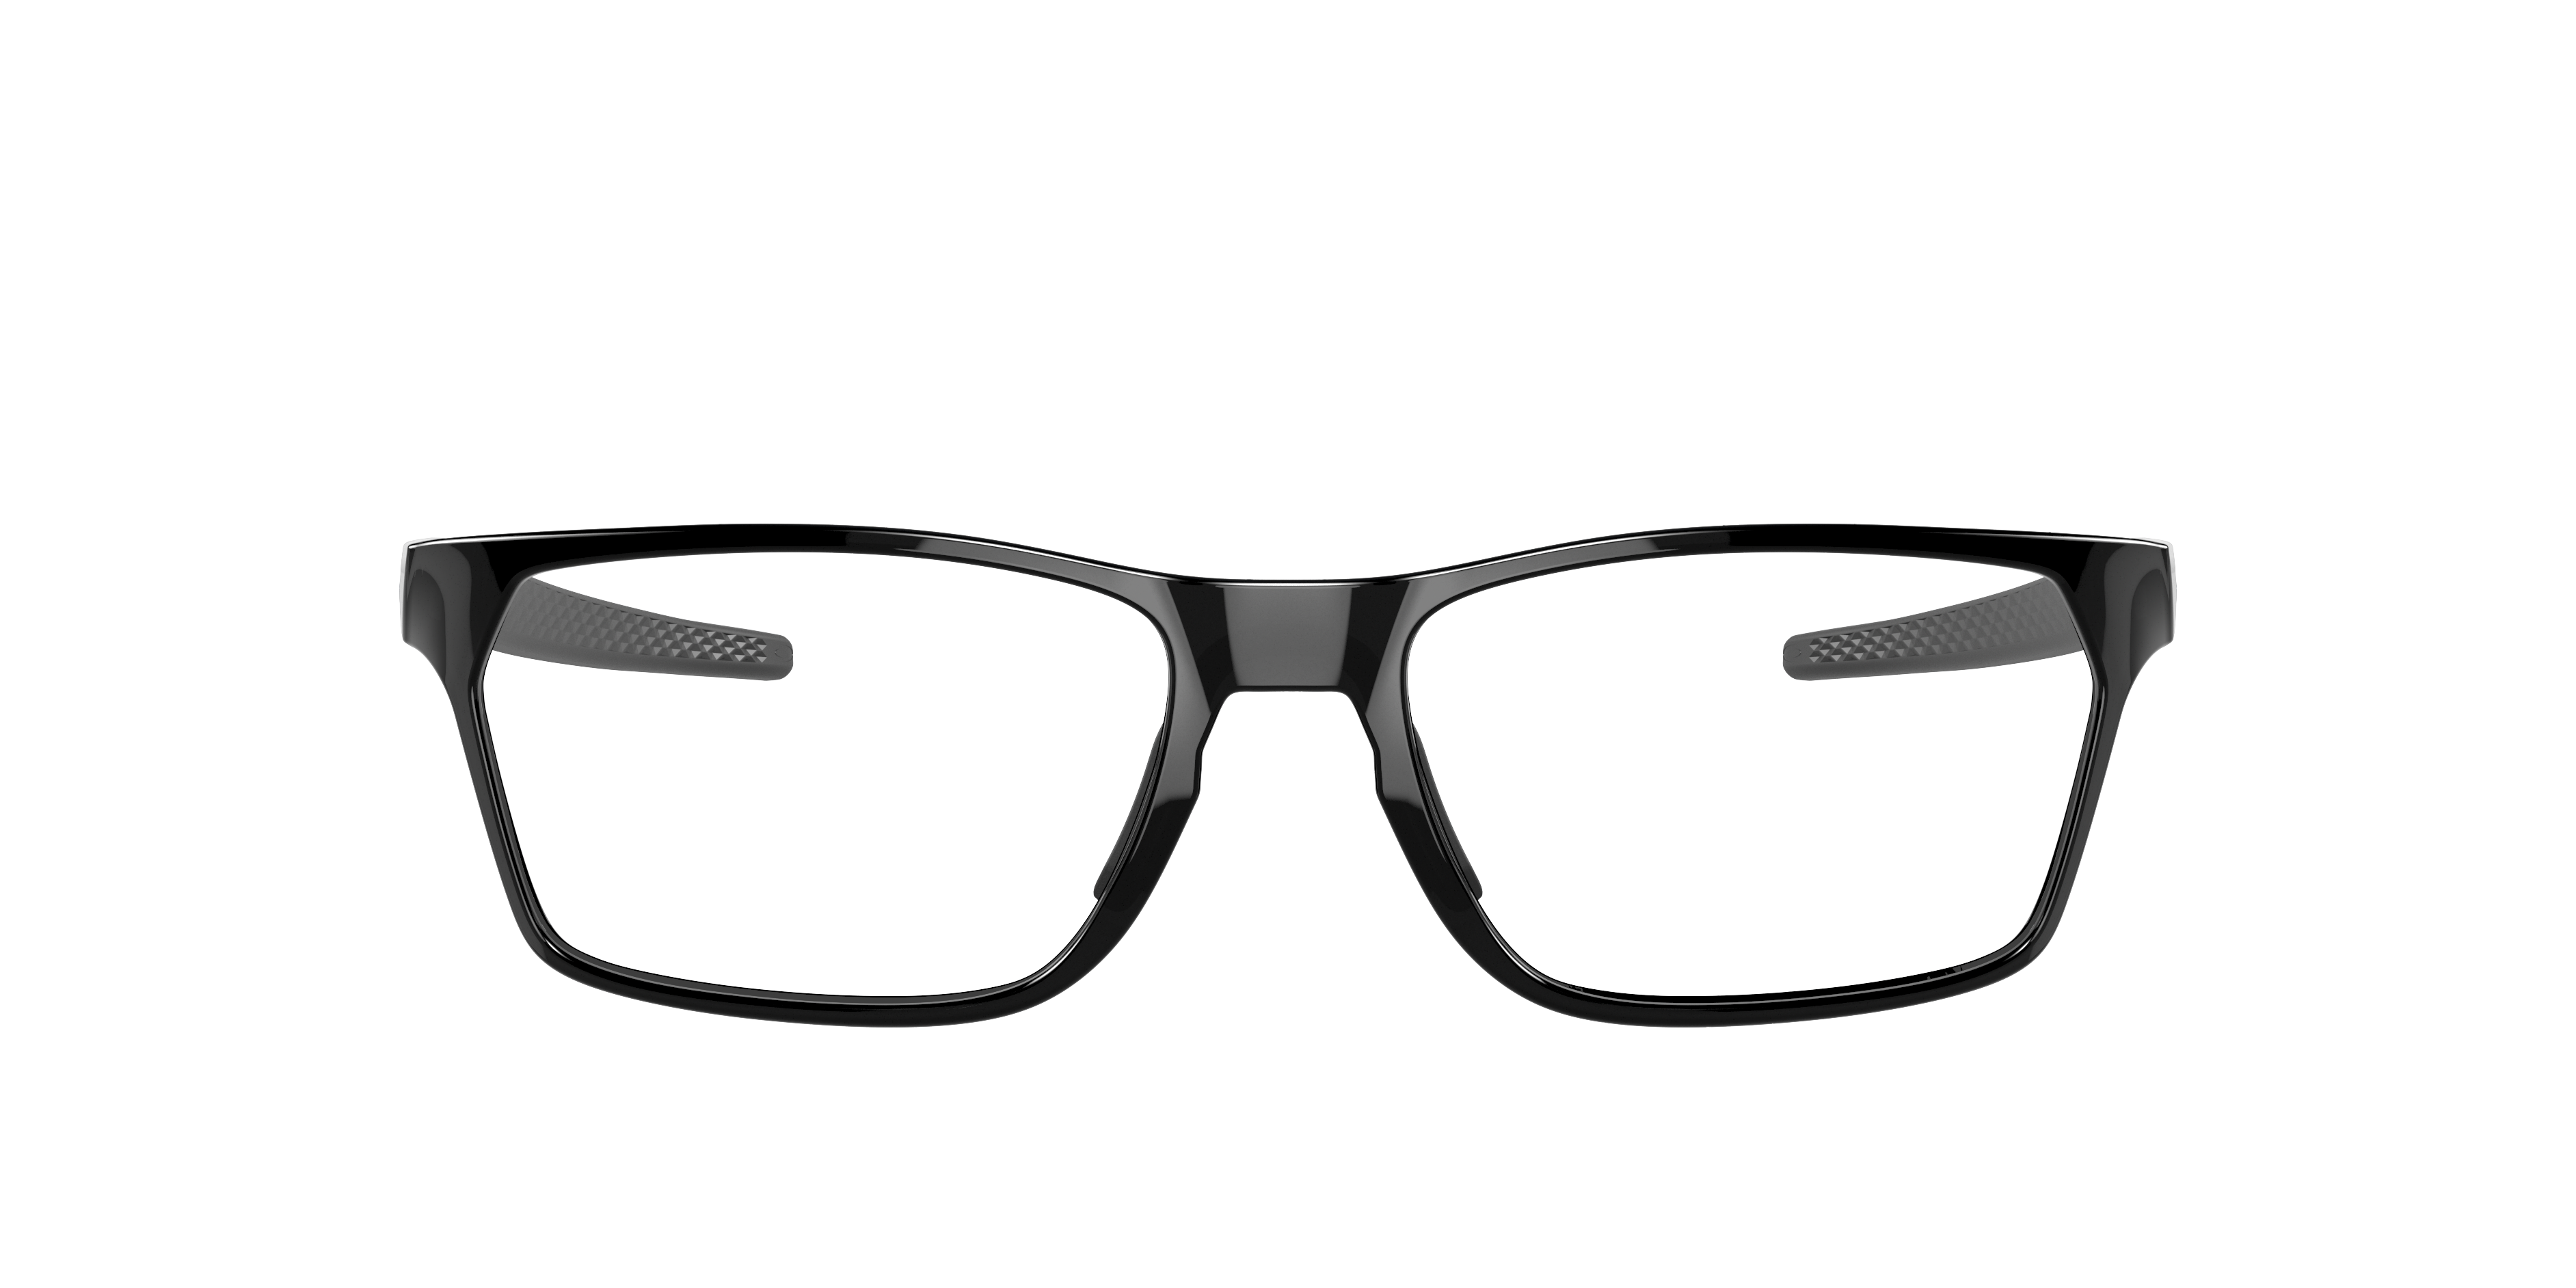 Unisex Durable Square Shape Sunglasses/Spectacle Frames